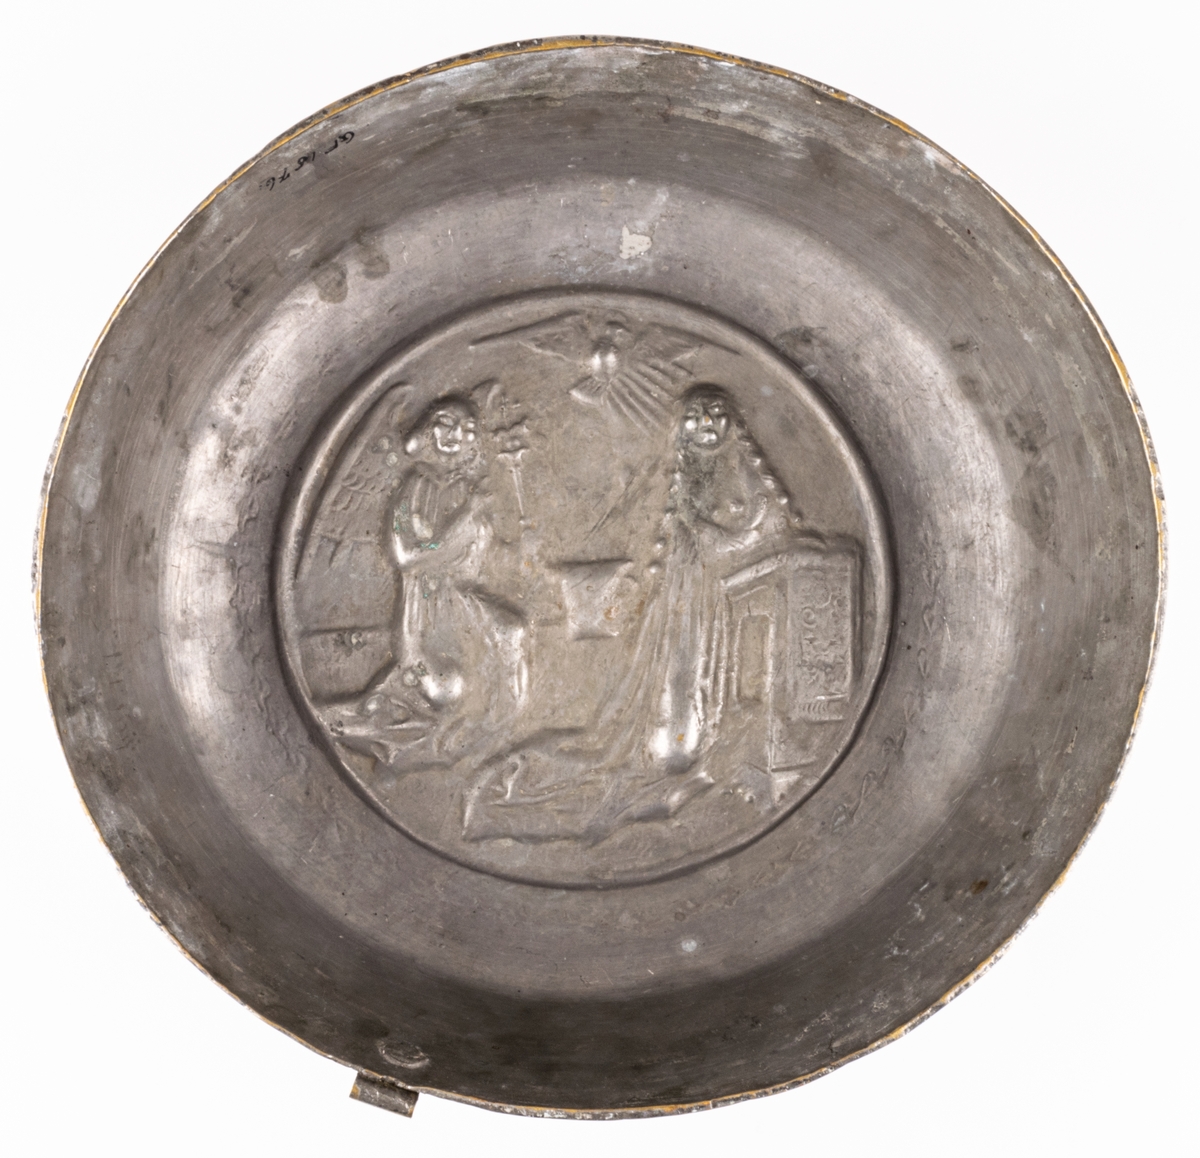 Dopfat av förtent mässing, rund med reliefbild: Marie bebådelse.
Ursprungligen katalogiserad som puddingform, senare ändrat till dopfat.